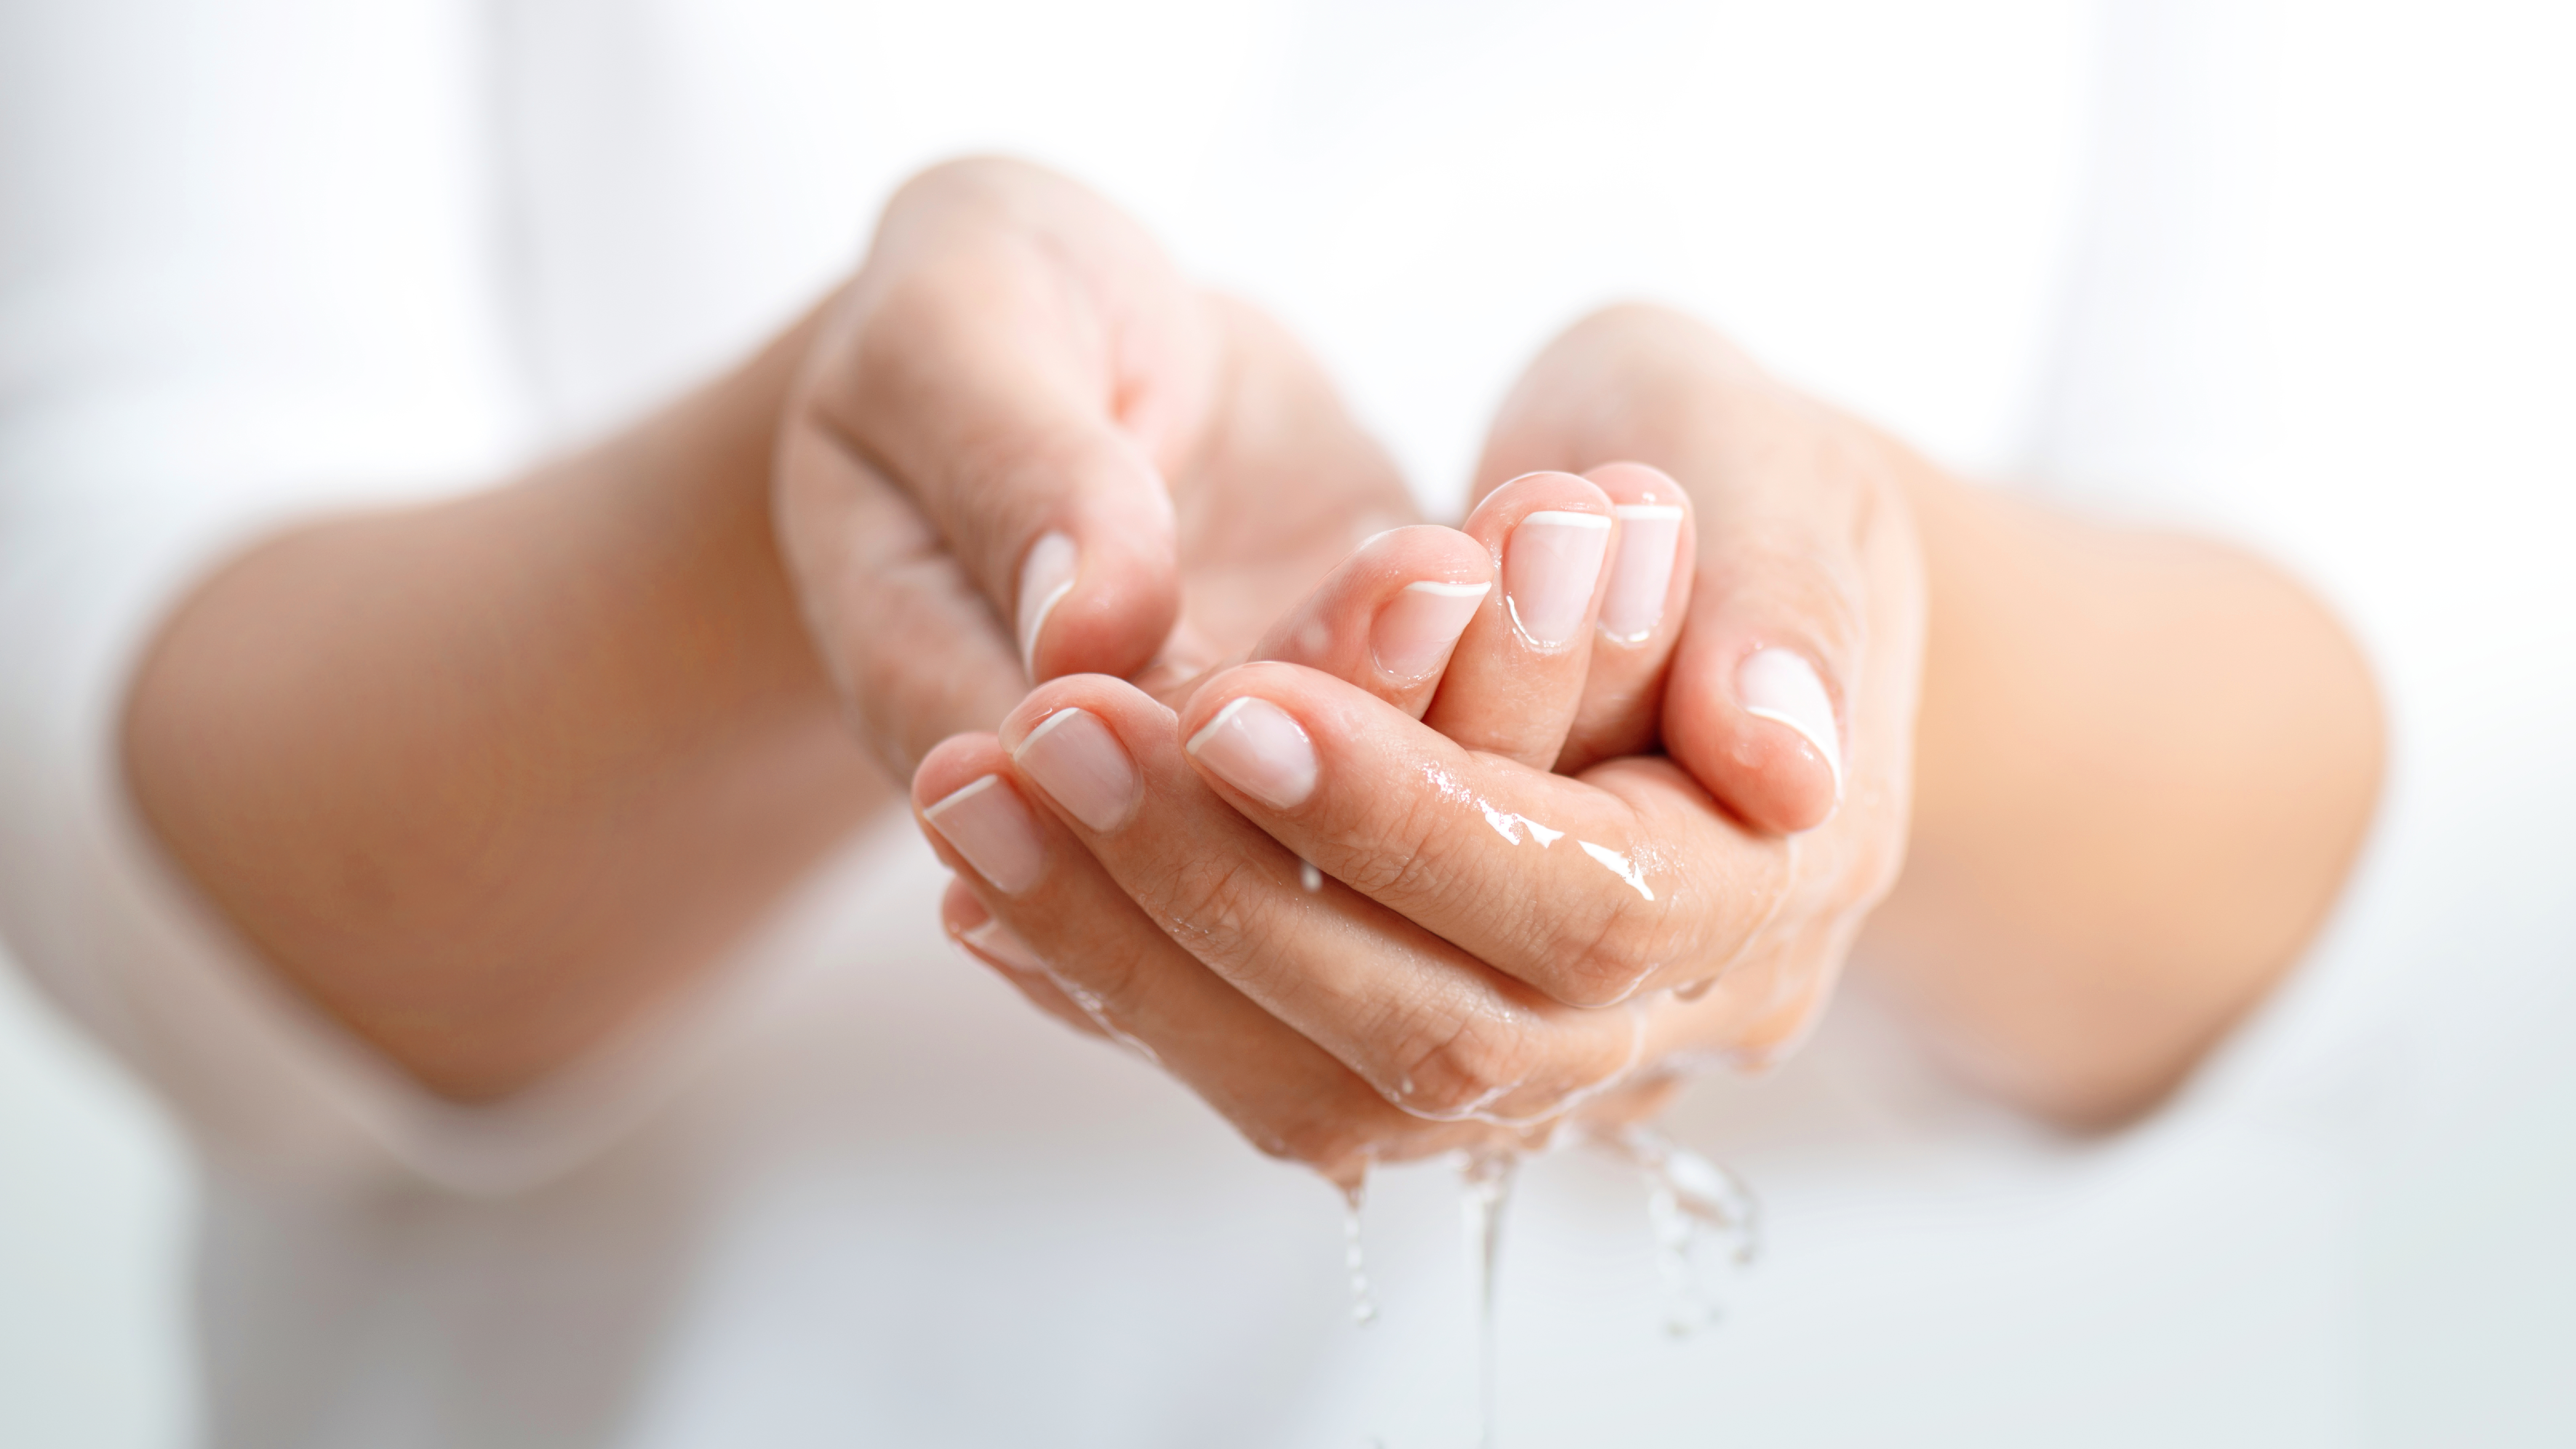 Praxismaterial von Desinfektion und Hygiene der Hände